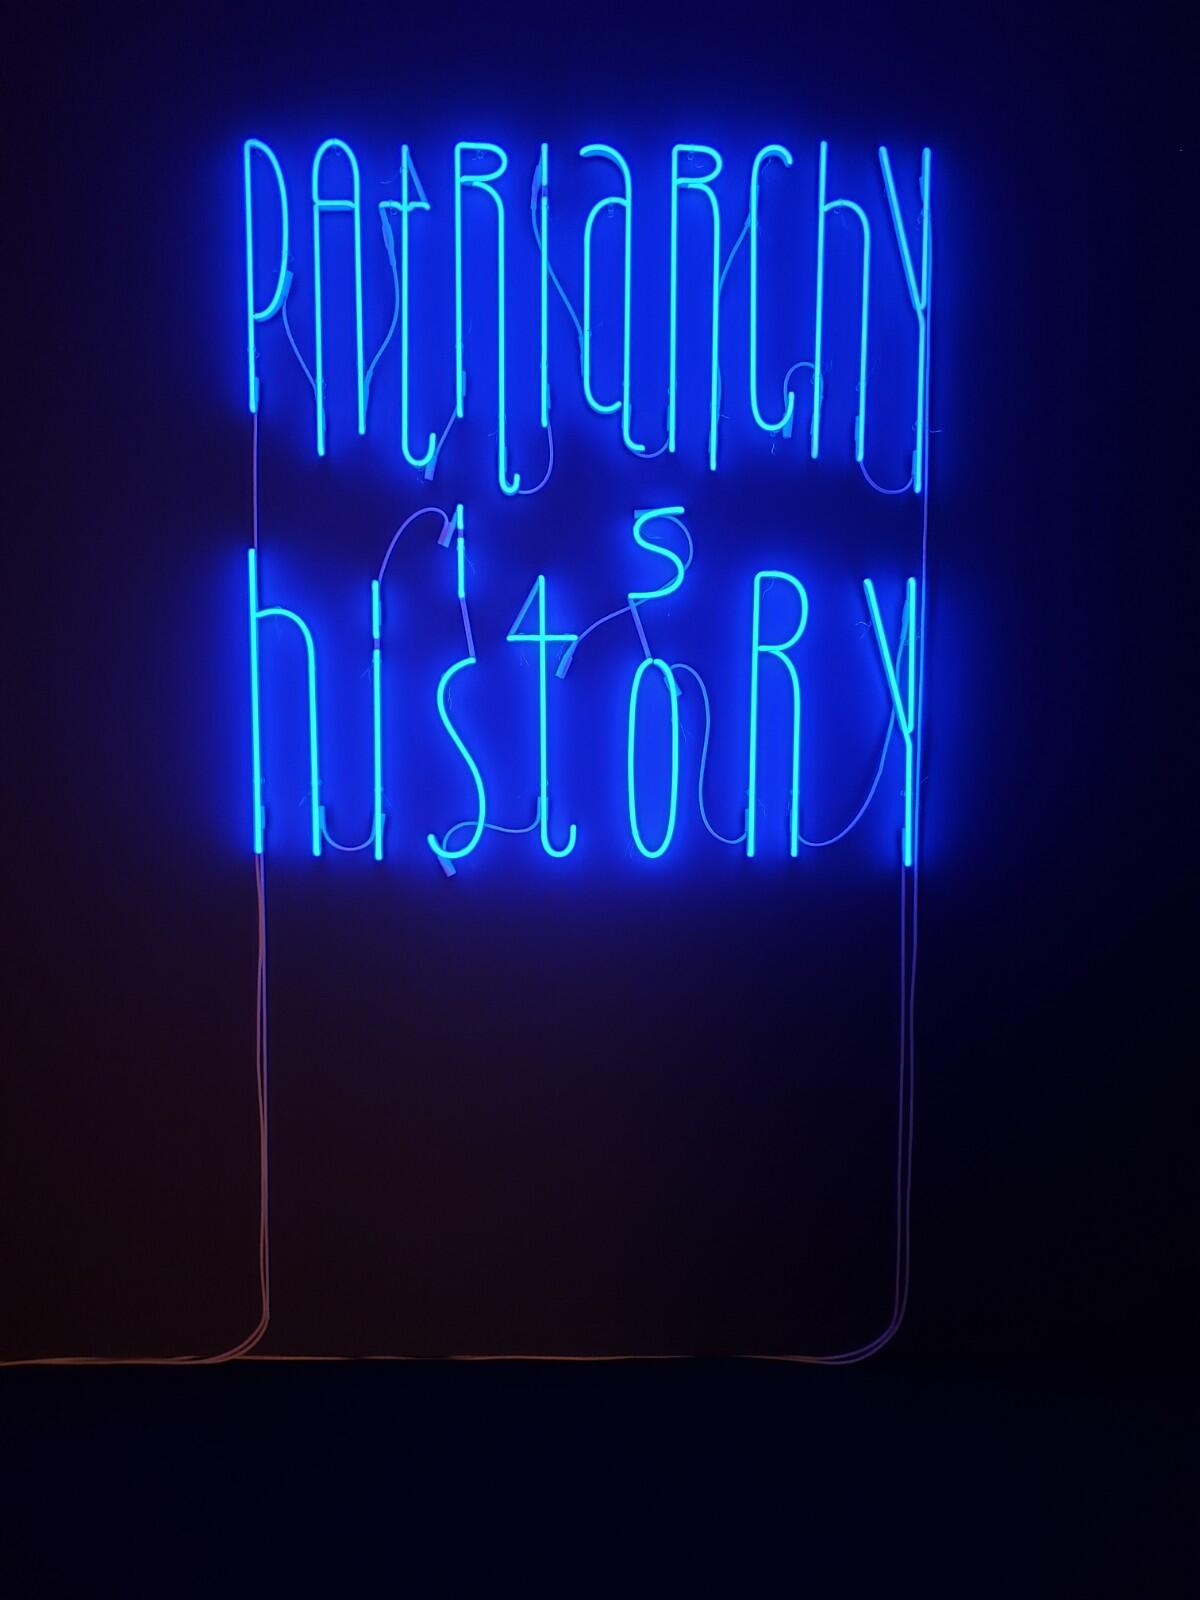 Yael Bartana, "Patriarchy Is History," neon